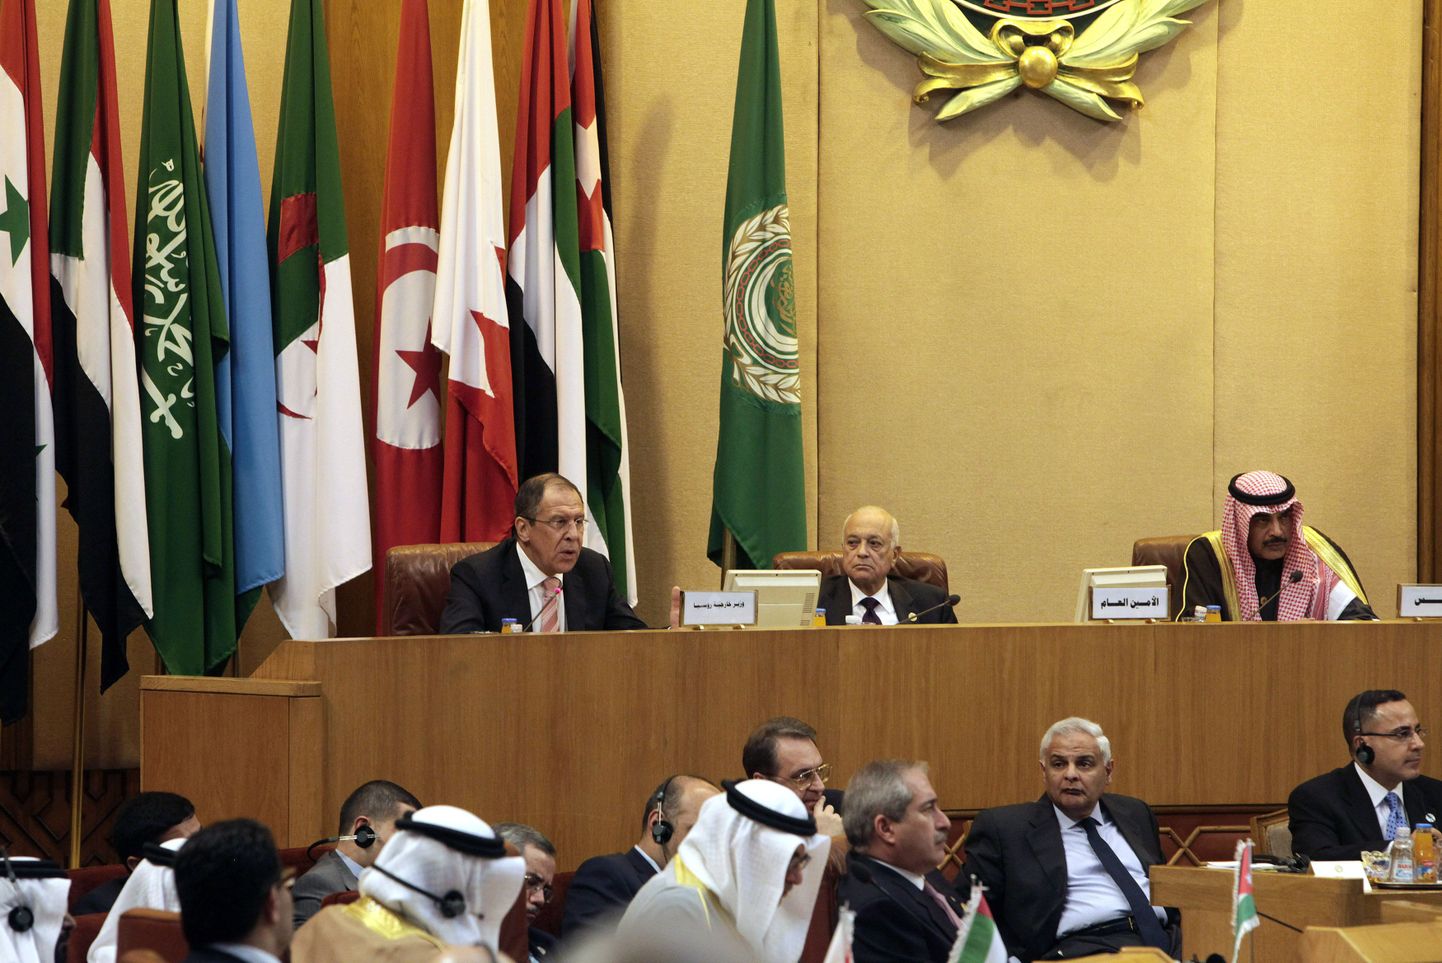 Vene välisminister Sergei Lavrov (taga vasakul) Egiptuse pealinnas Araabia Liiga välisministrite nõupidamisel. Lavrovi kõrval on liiga juht Nabil al-Arabi.